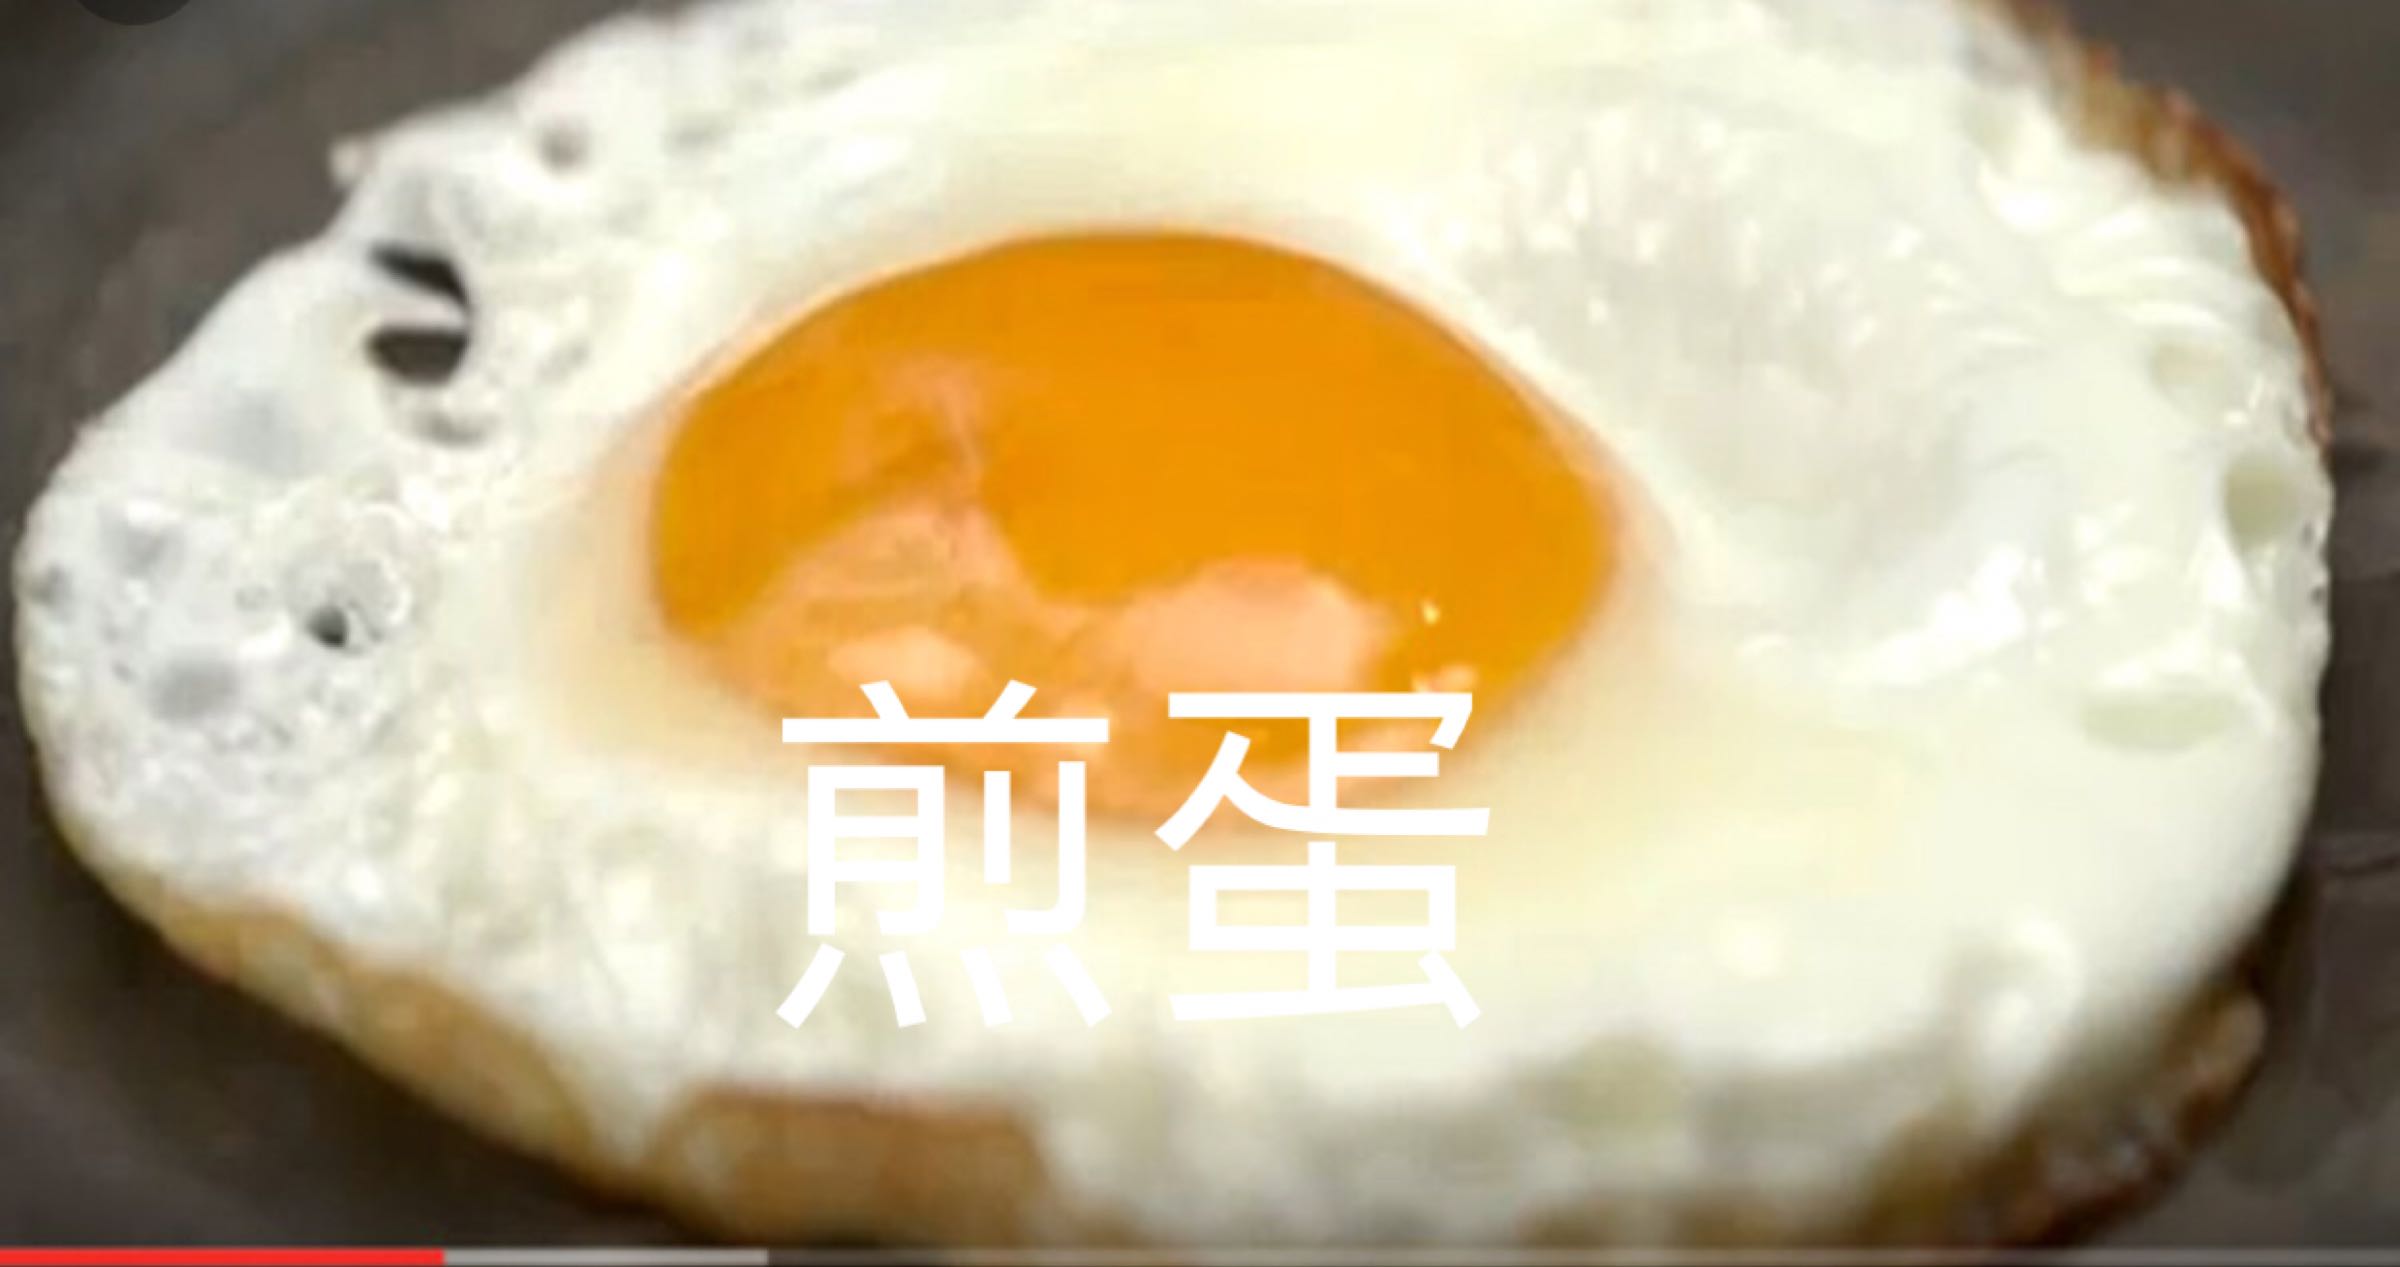 煎蛋 Fried Egg